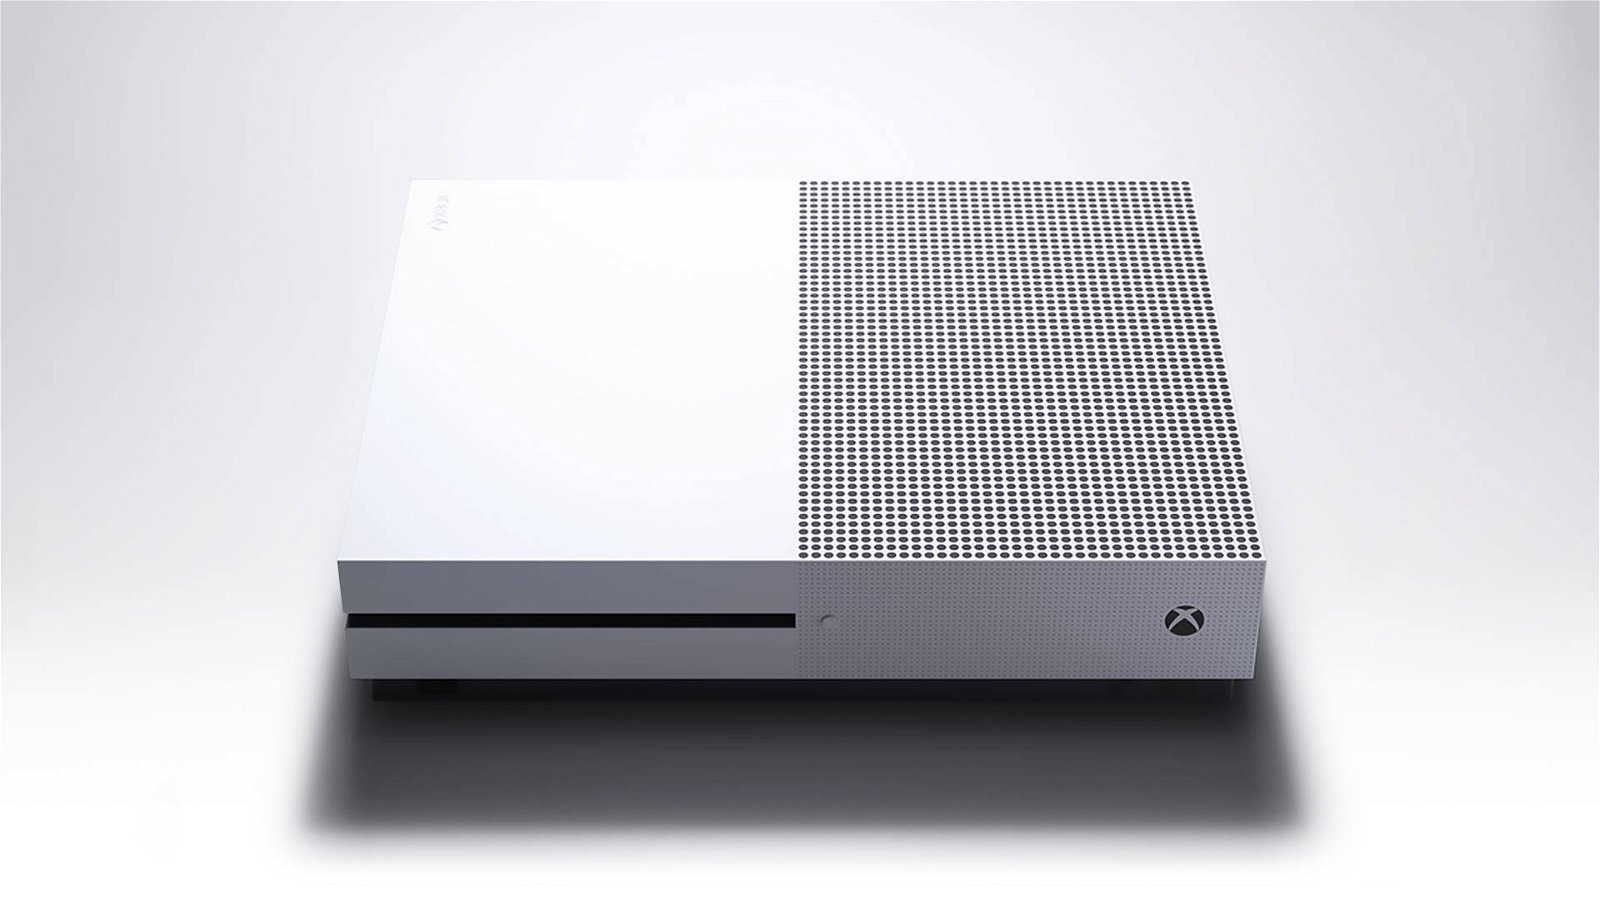 Immagine di Xbox One: la presentazione fu un disastro, Phil Spencer ci spiega cosa è accaduto dietro le quinte